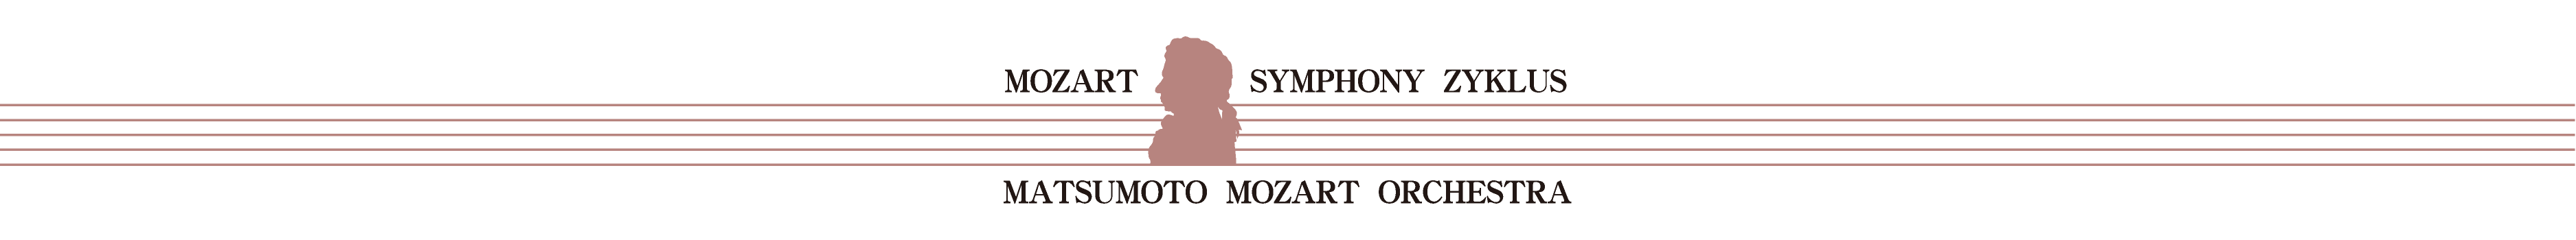 第３回 モーツァルト交響曲・全曲演奏会